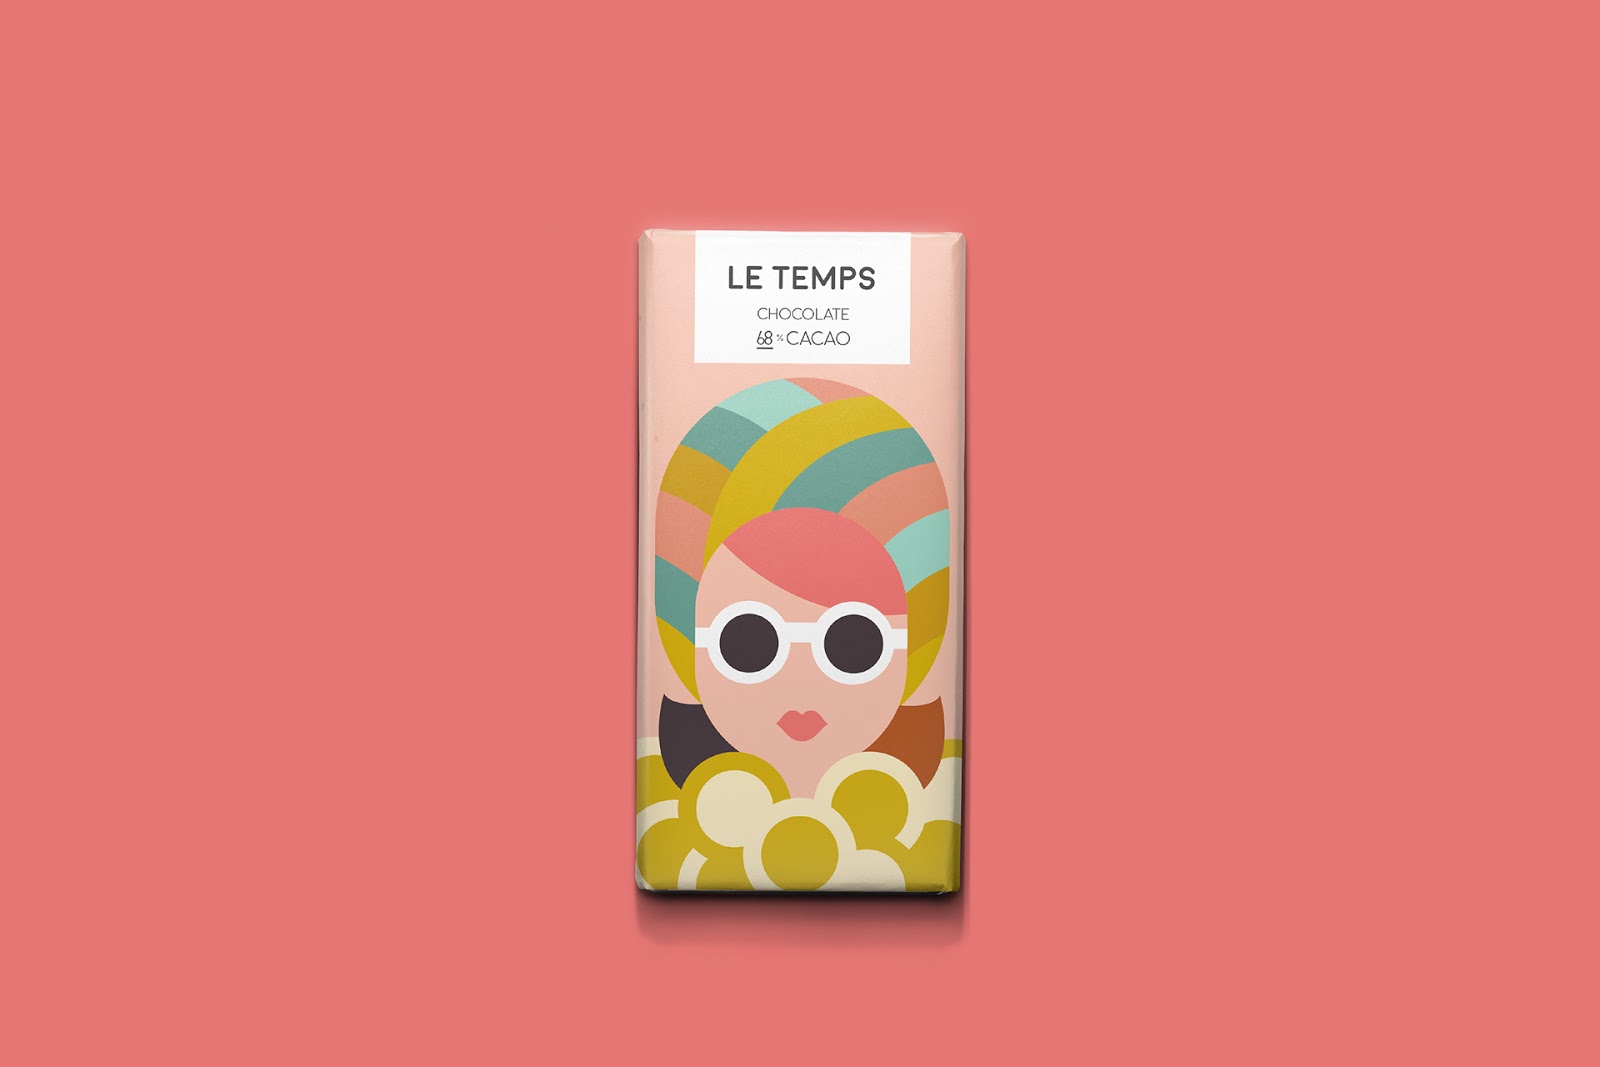 Le Temps巧克力包装设计